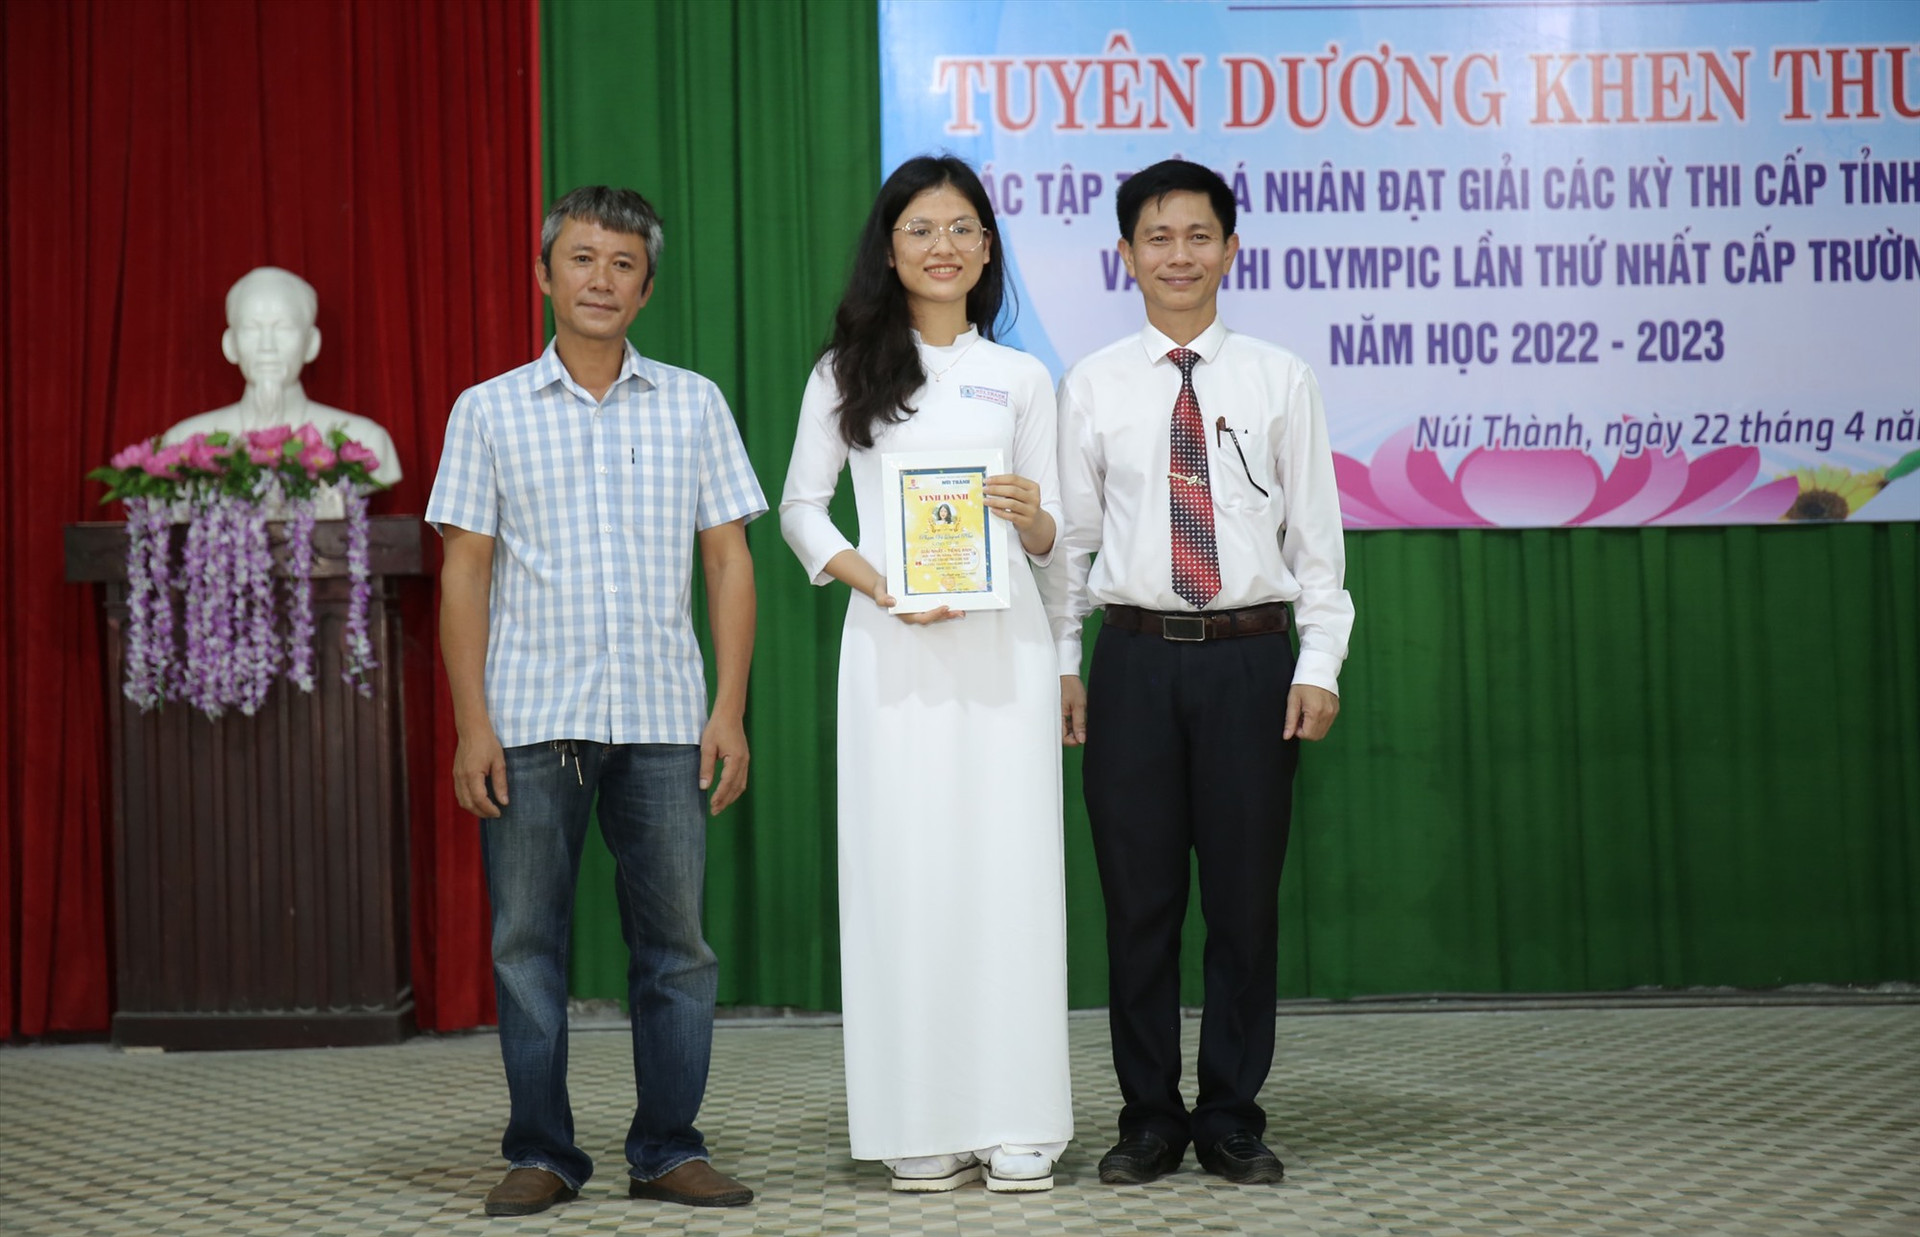 Lãnh đạo nhà trường THPT Núi Thành (Núi Thành) khen thưởng Quỳnh Như (ở giữa) về thành tích giải Nhất cuộc thi học sinh giỏi tiếng Anh cấp tỉnh năm học 2022 - 2023. Ảnh: N.T